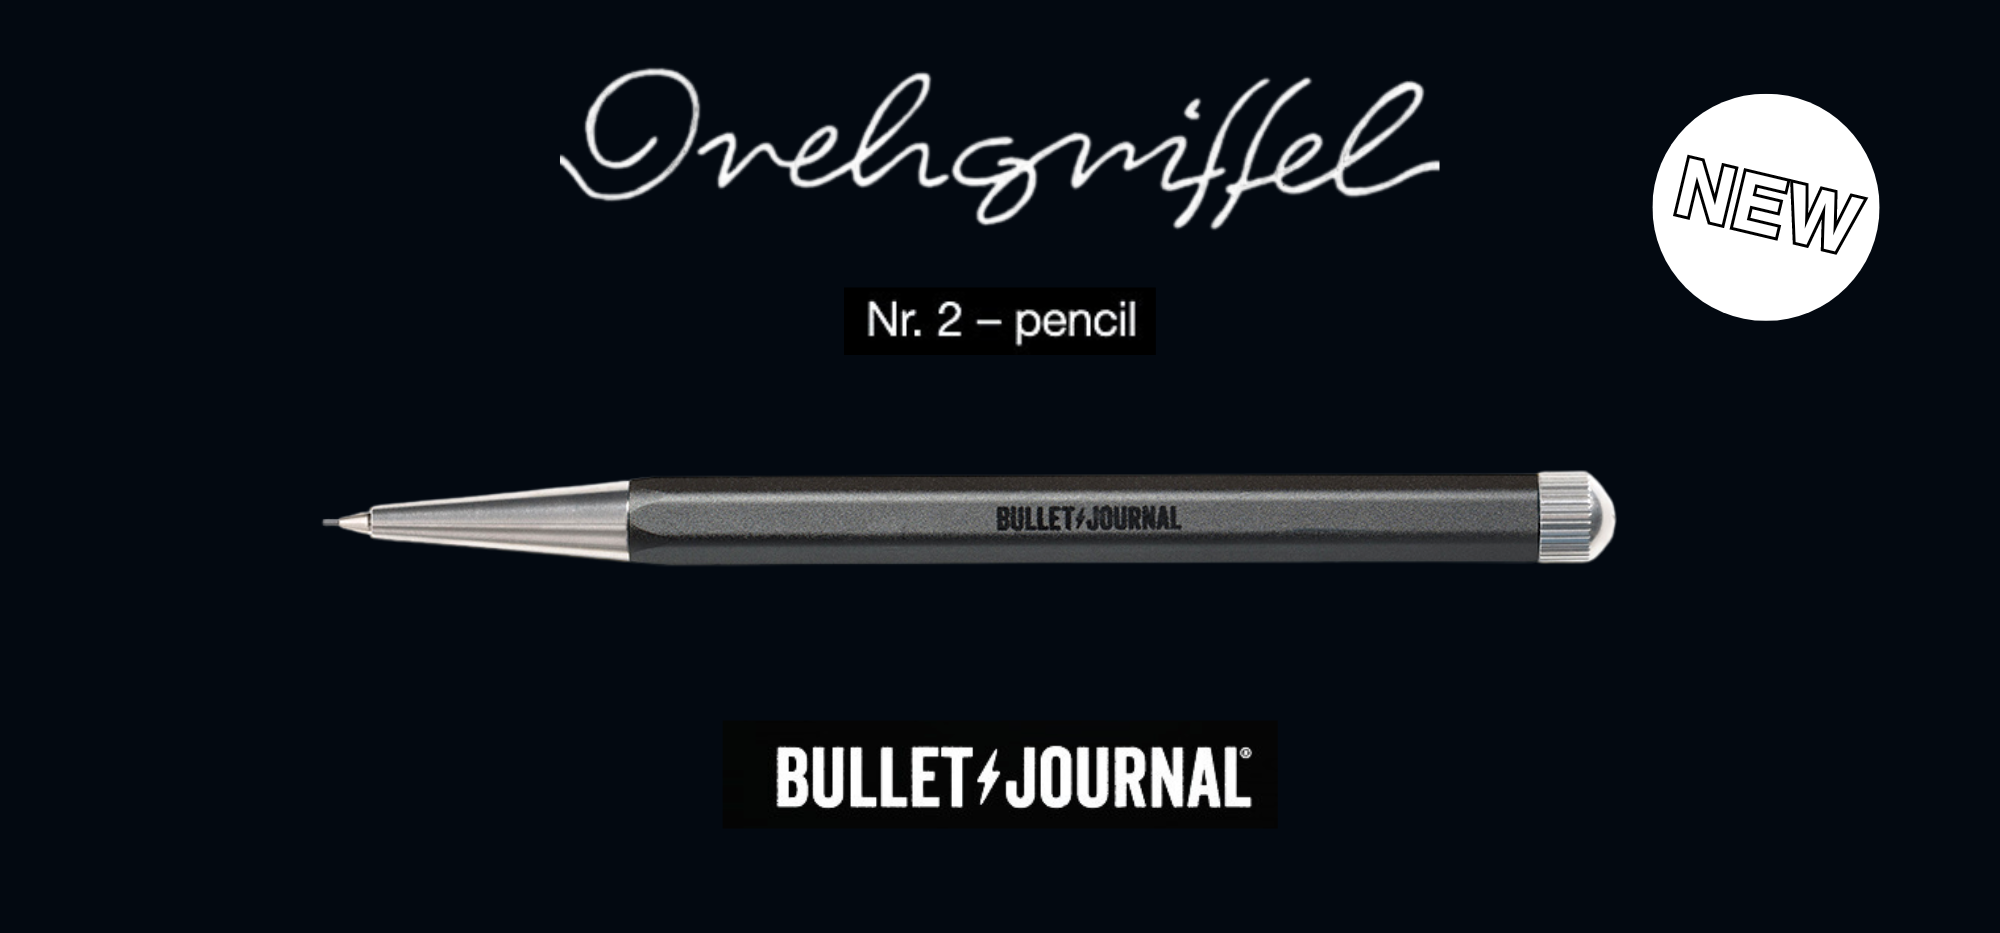 New Journal Day. Leuchtturm1917 Bullet Journal Edition 2. : r/fountainpens